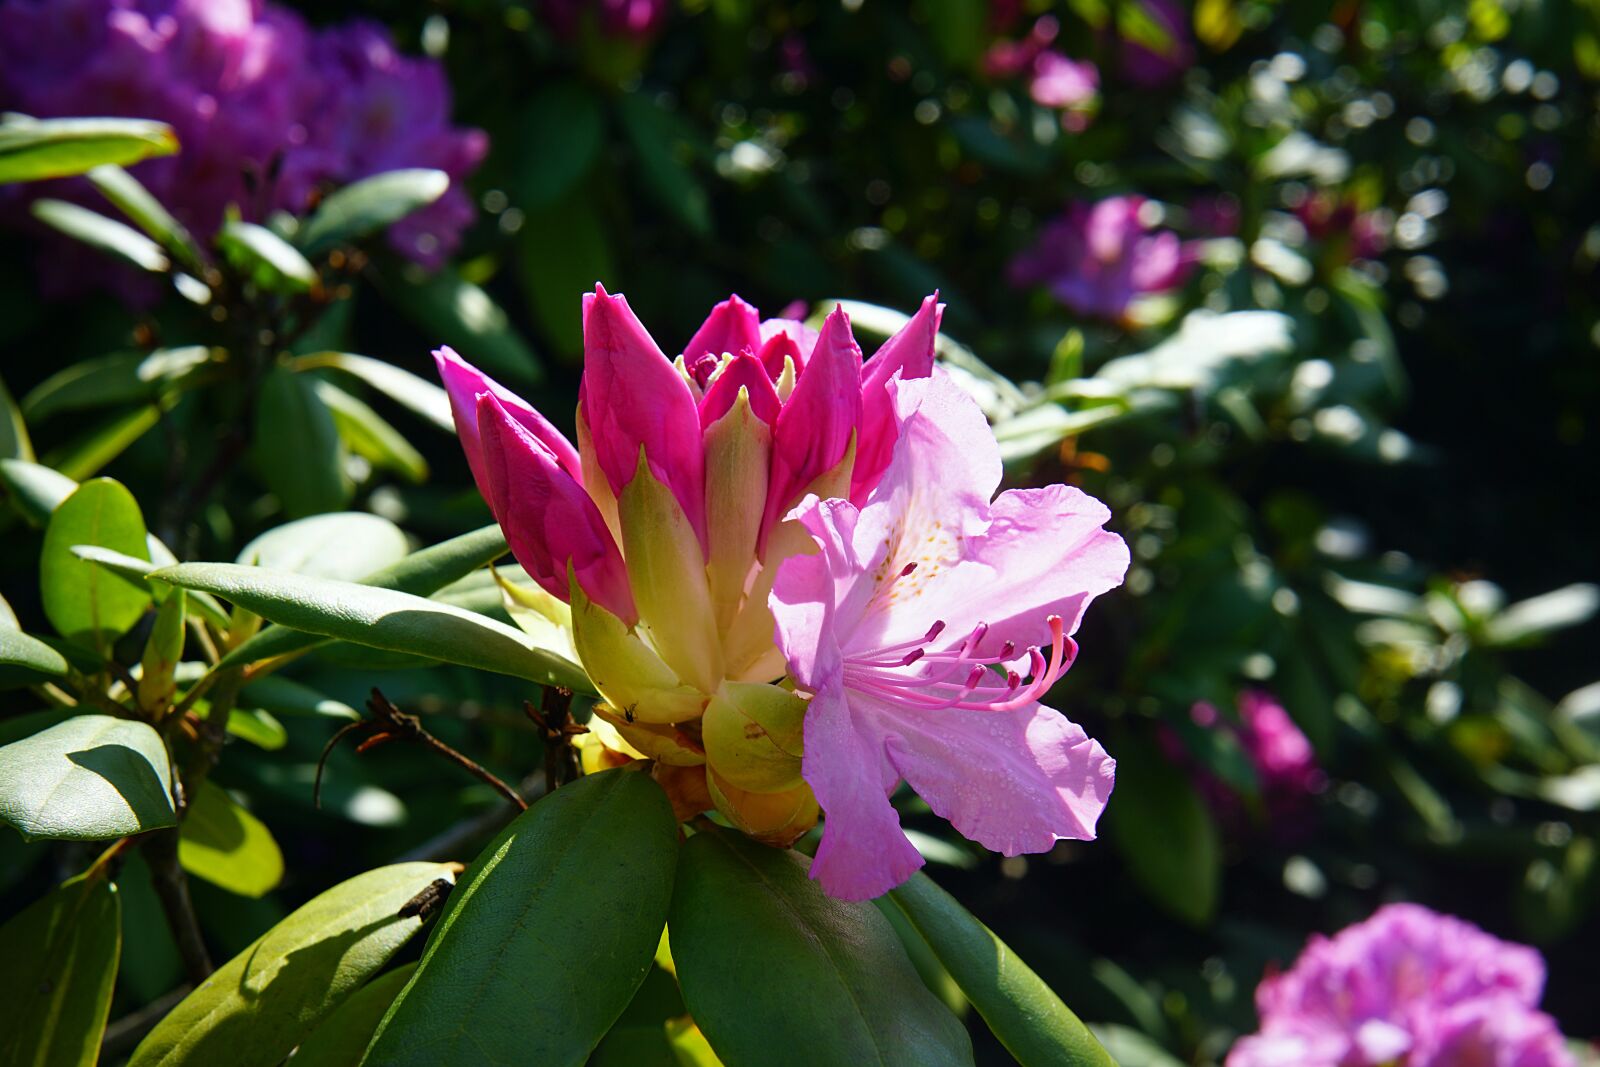 Samyang AF 45mm F1.8 FE sample photo. Rhododendron, bud, bloom photography